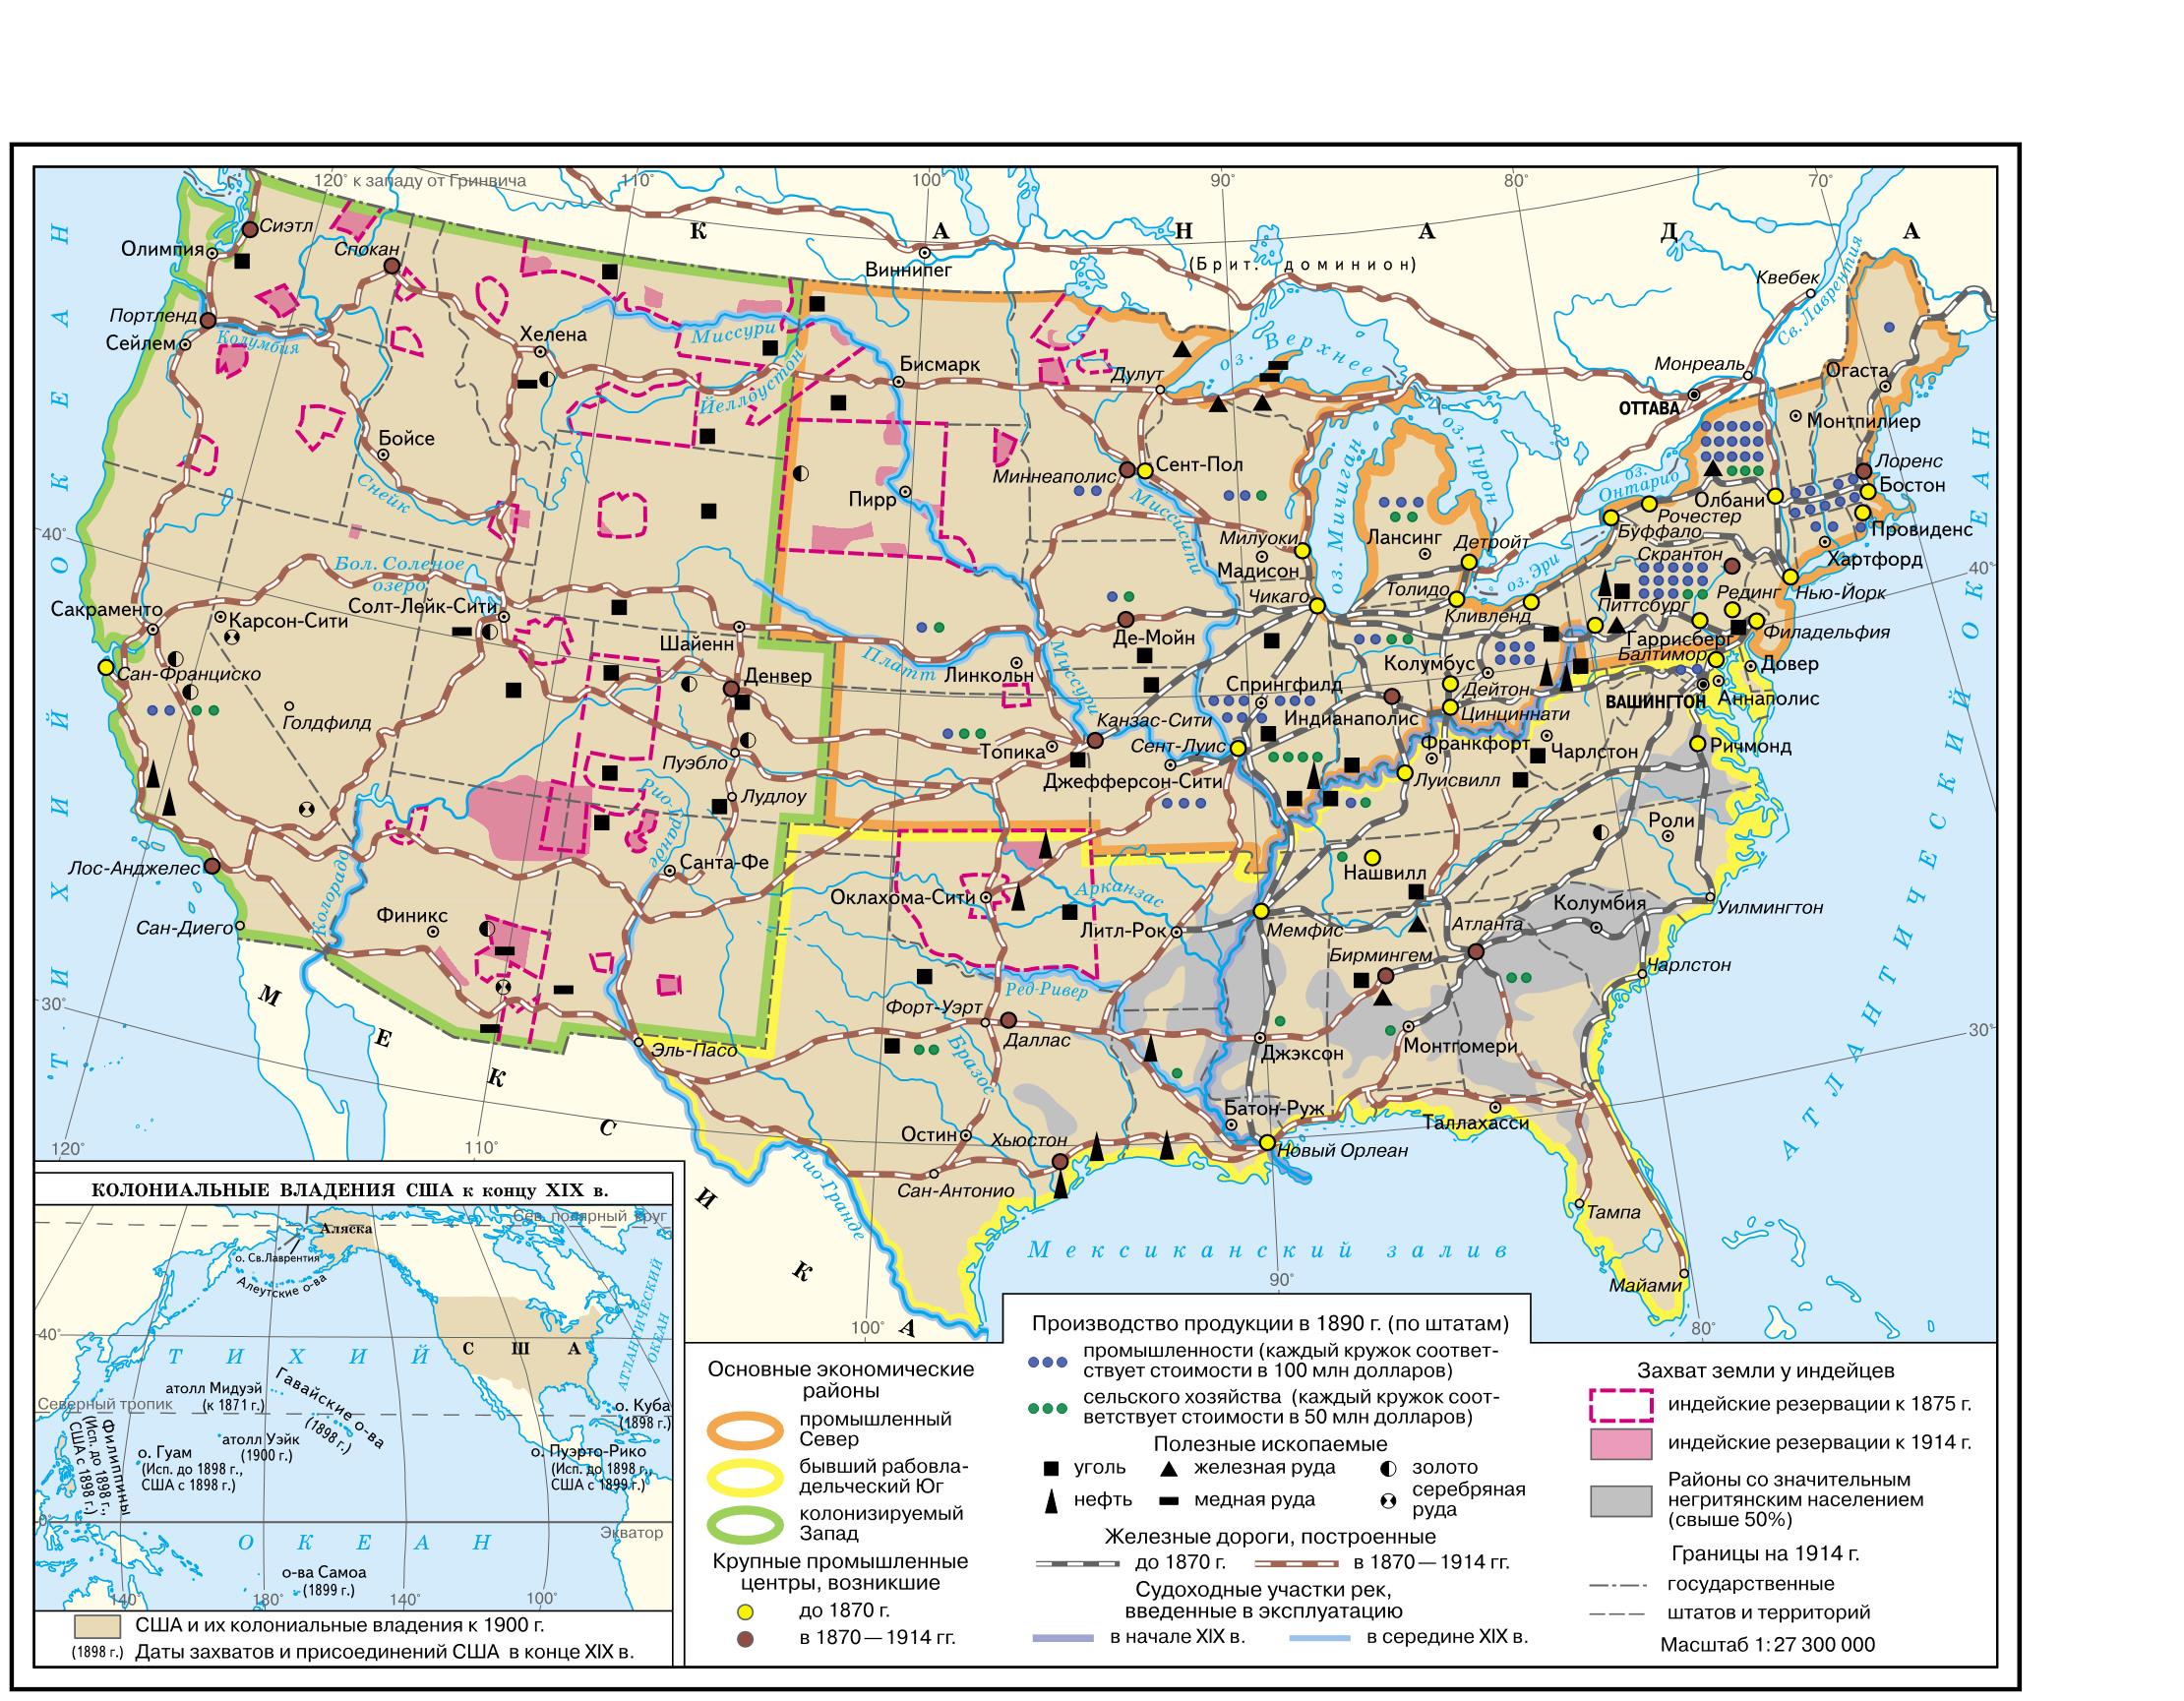 Полезные ископаемые материка северная америка. Полезные ископаемые США на карте. Экономическая карта США 19 век. Карта природных ископаемых США. Основные месторождения США на карте.